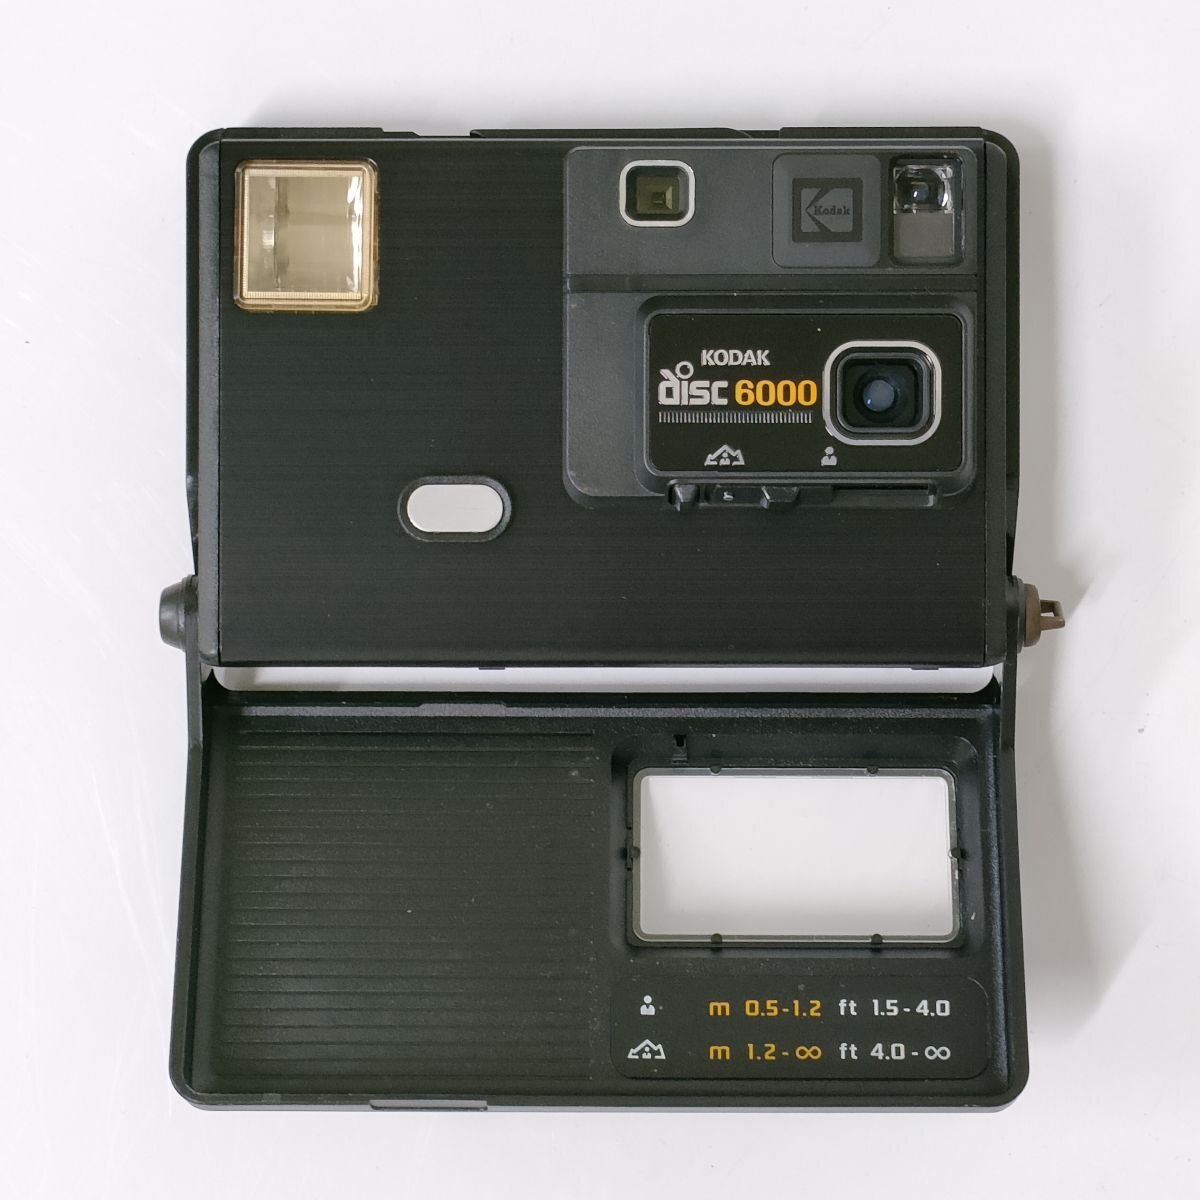 Kodak disc 4000 , disc 6000 + 期限切れフィルム1点 , フィルム空箱1点(disc6000説明書類 在中) [8765TMC]の画像3